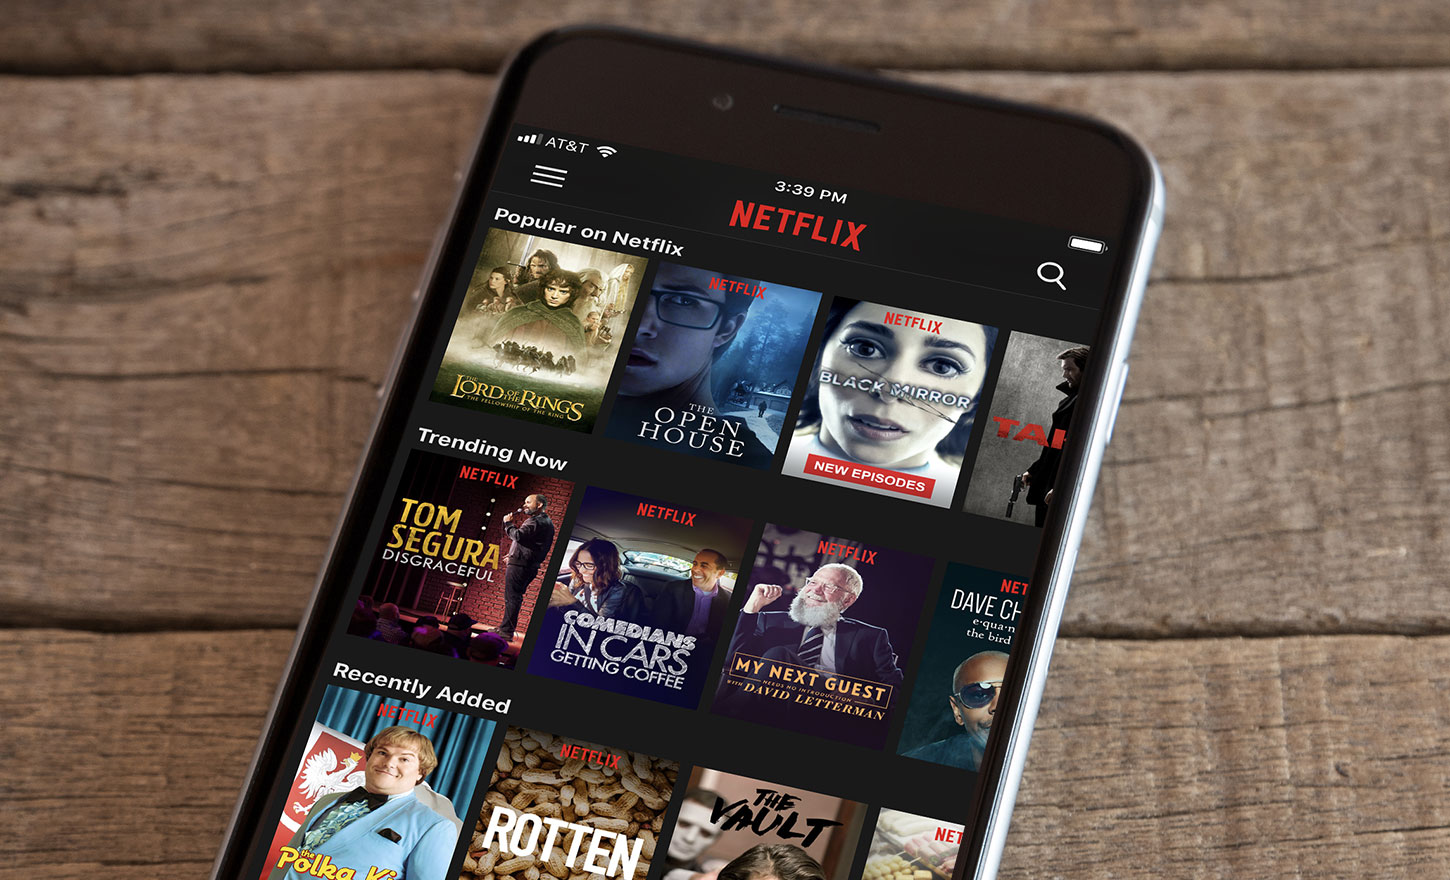 Netflix's StreamFest grew global app installs by 200% week-over-week